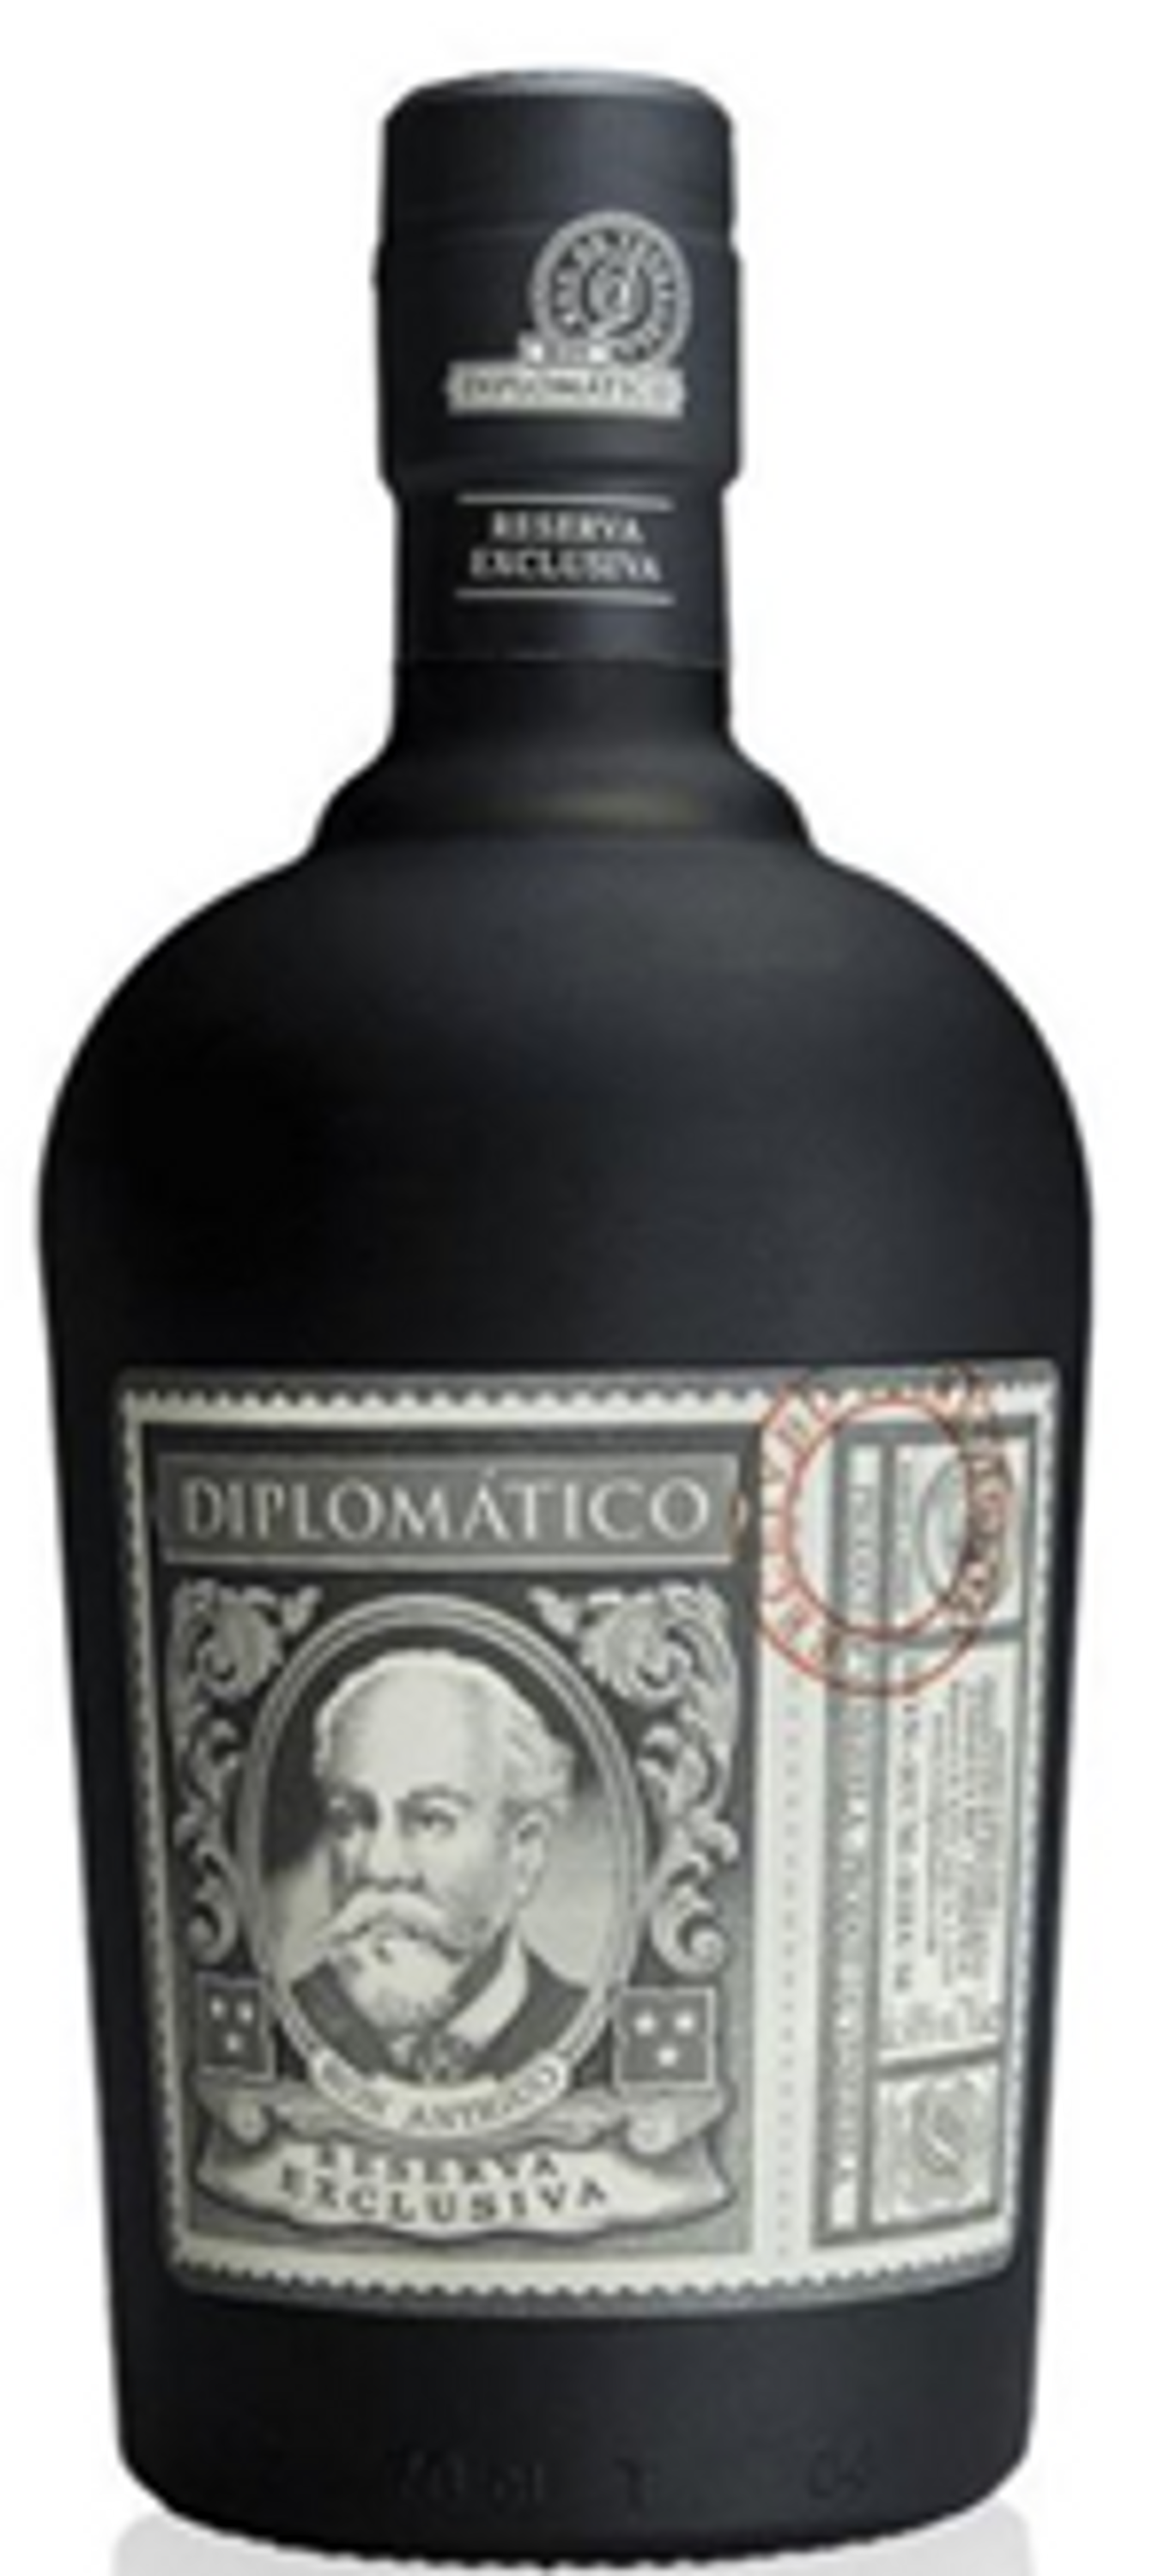 Diplomatico Rum Reserva Exclusiva 0,7l, alc. 40 Vol.-%, Rum Venezuela